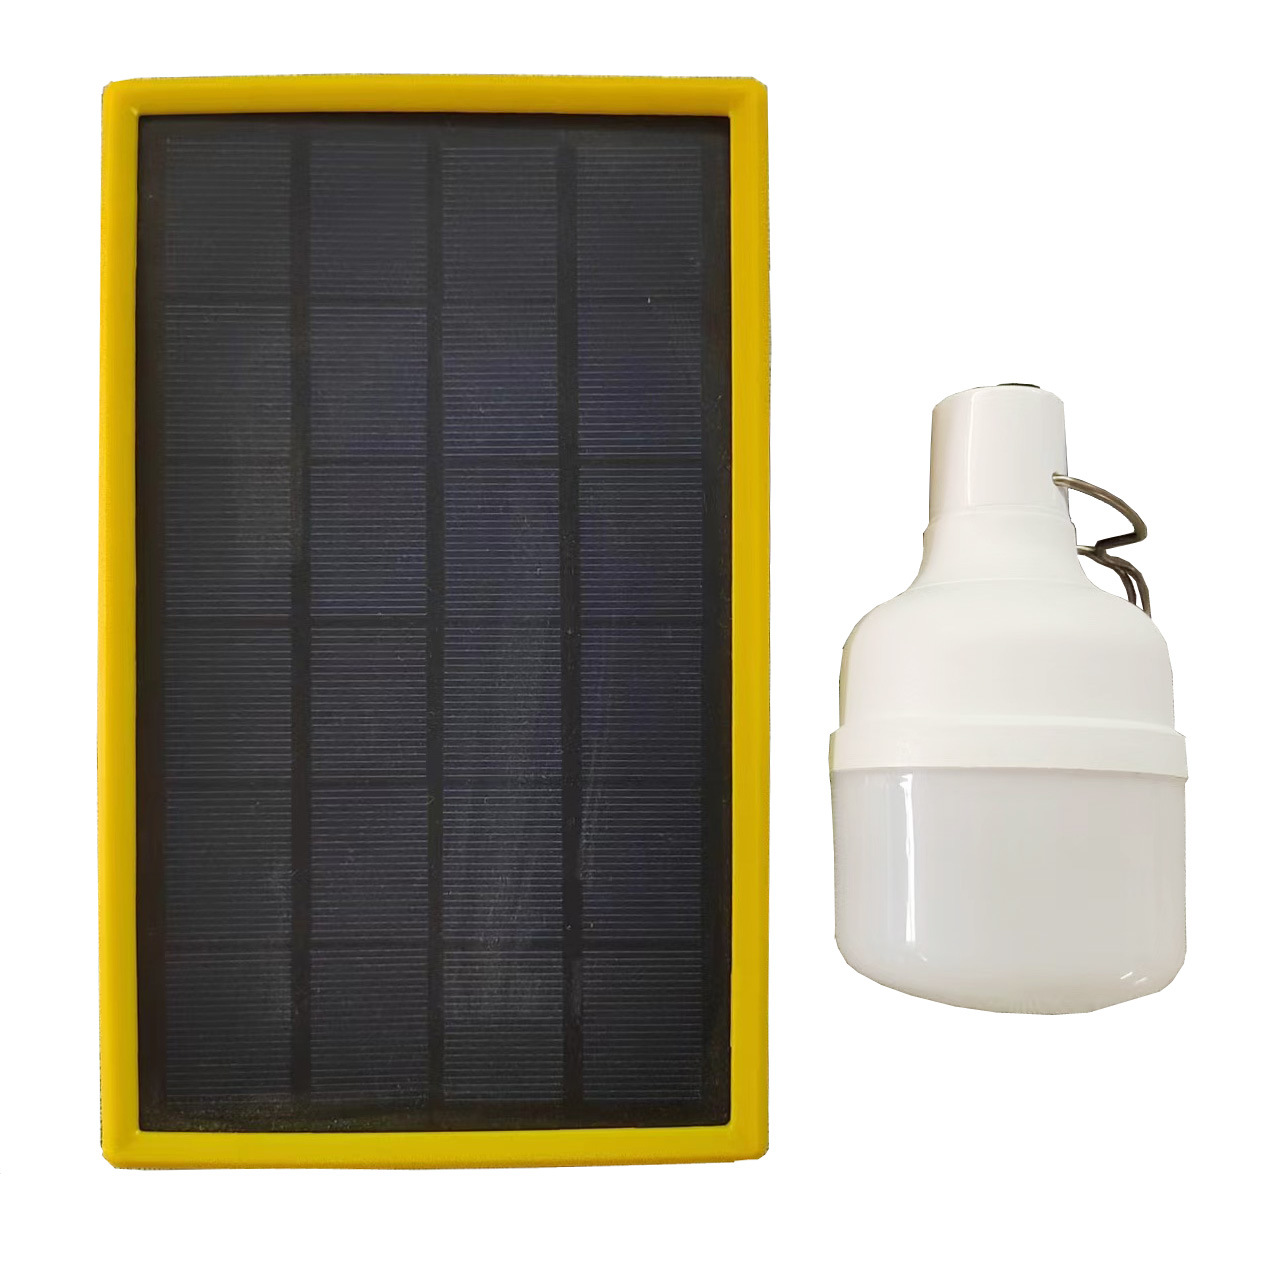 Bombilla solar / Bombilla LED solar portátil / Bombilla de emergencia solar / Luz de emergencia solar 150lm